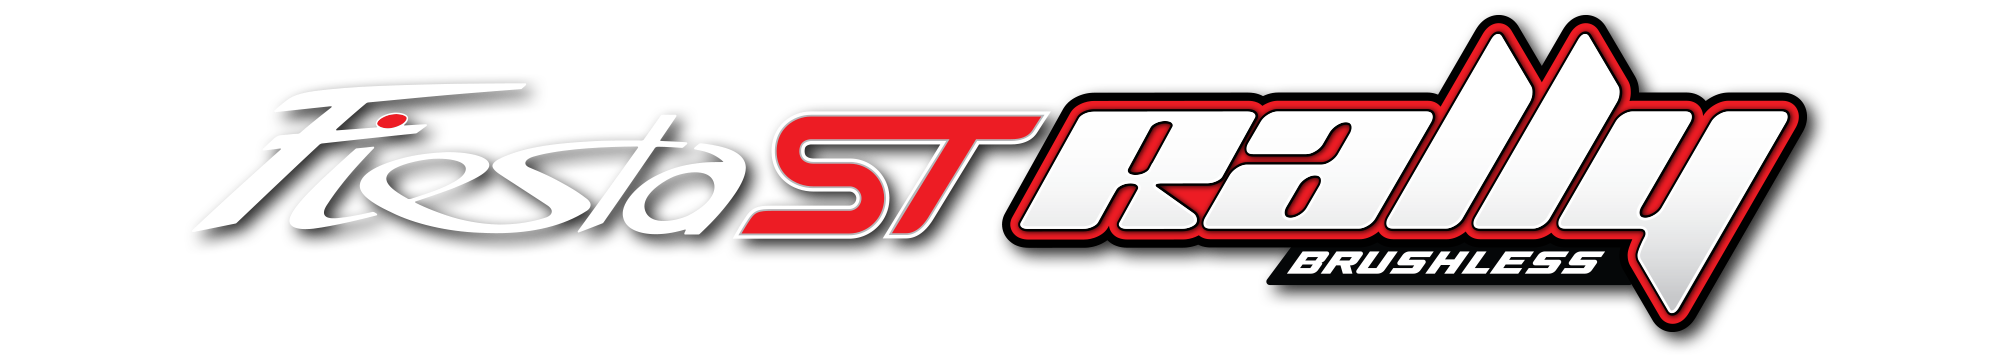 Fiesta ST Rally Brushless Logo